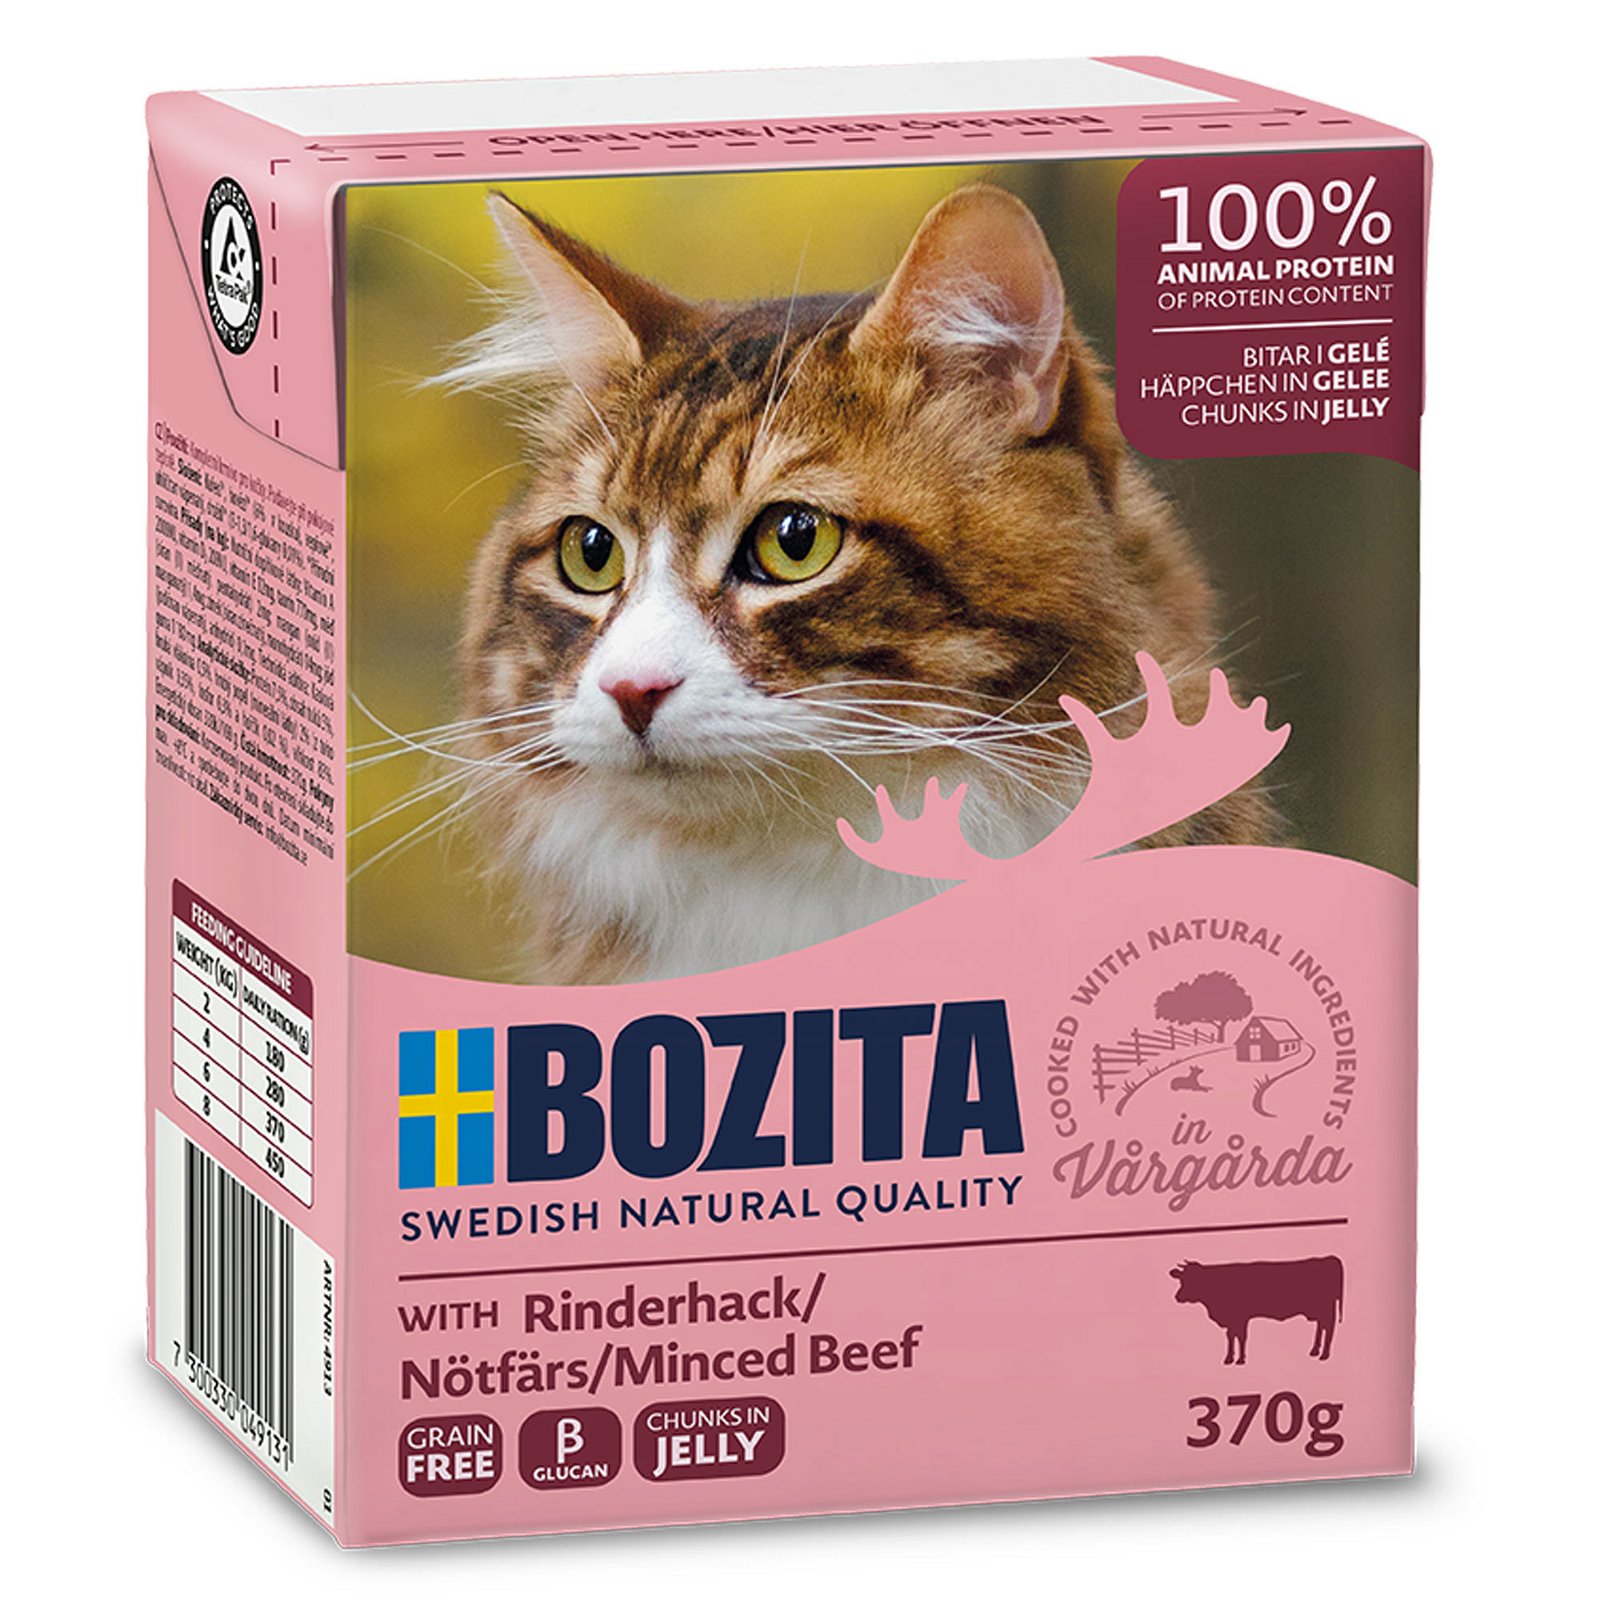 Bozita Katzenfutter, Rinderhack, 370 g